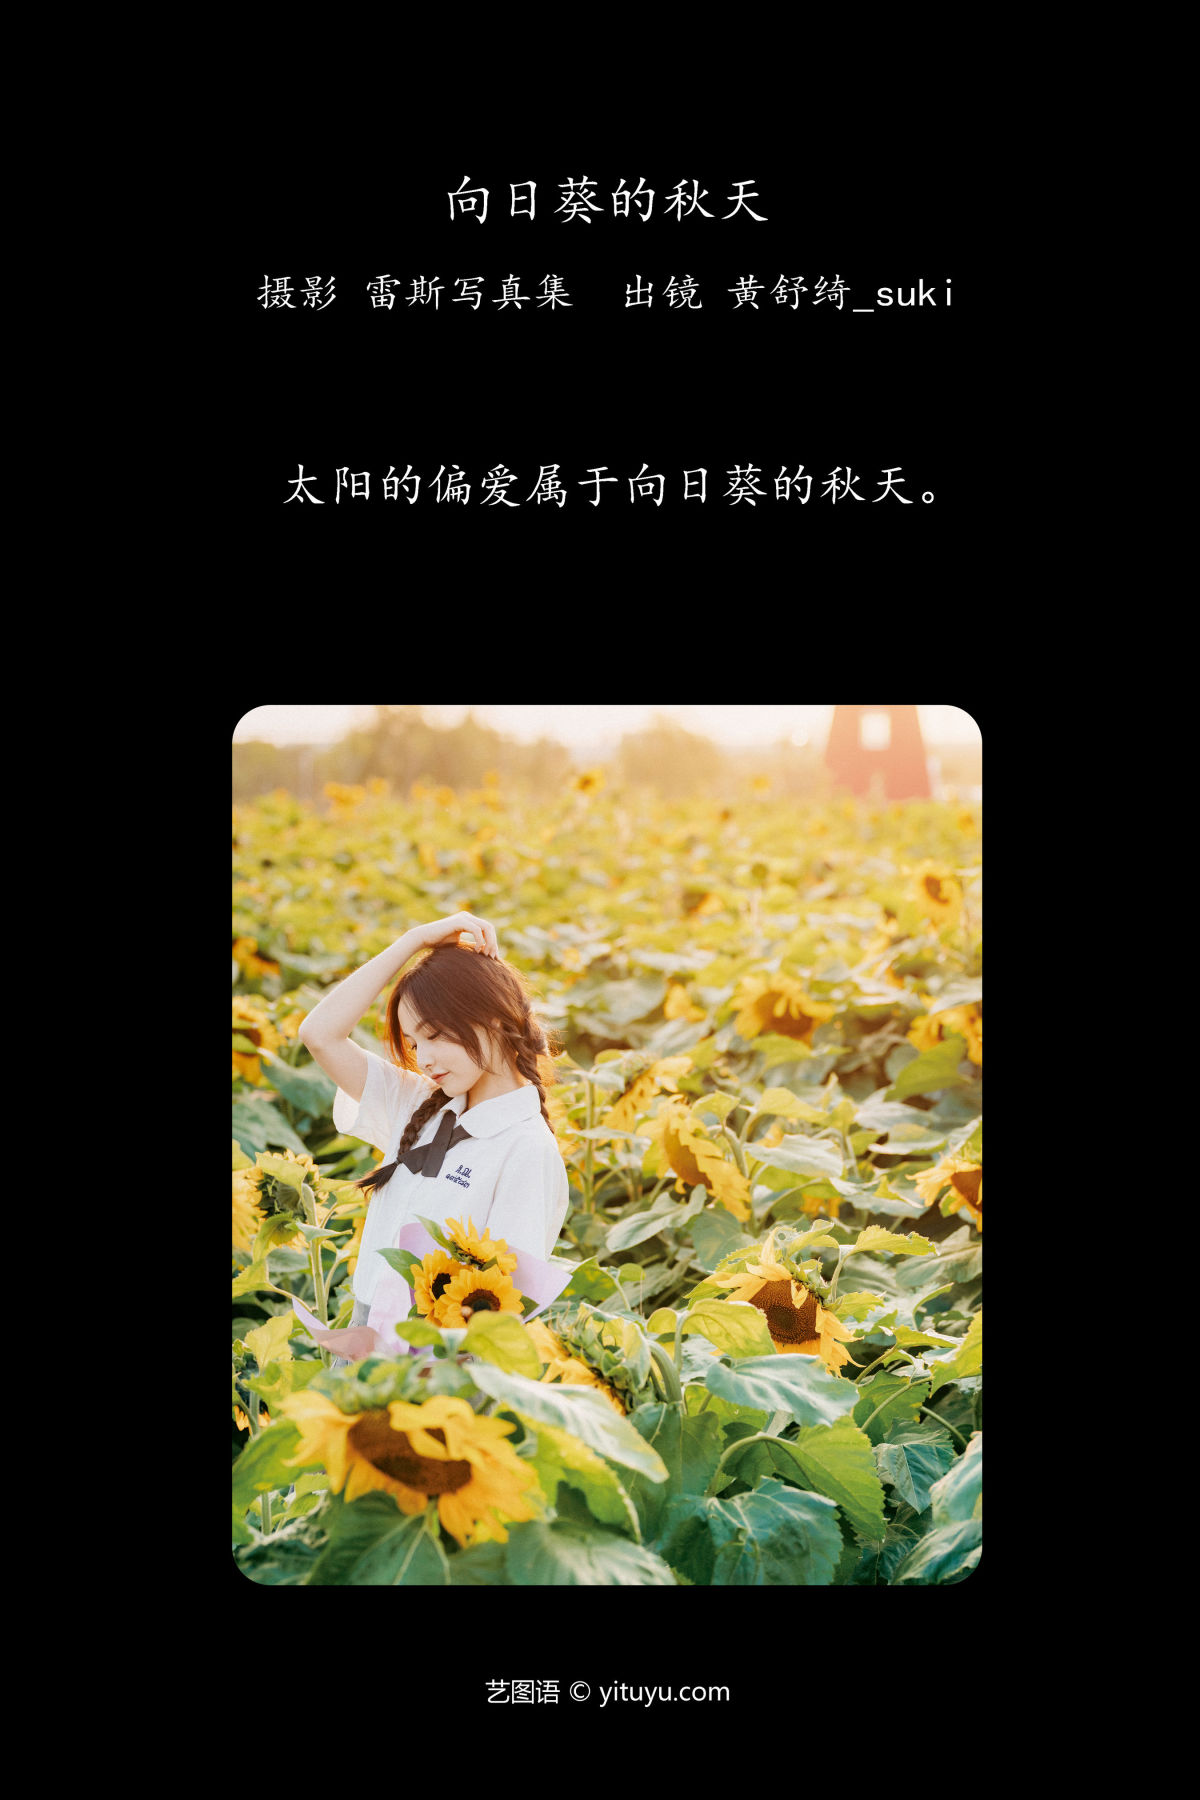 雷斯写真集_黄舒绮_suki《向日葵的秋天》美图作品图片2